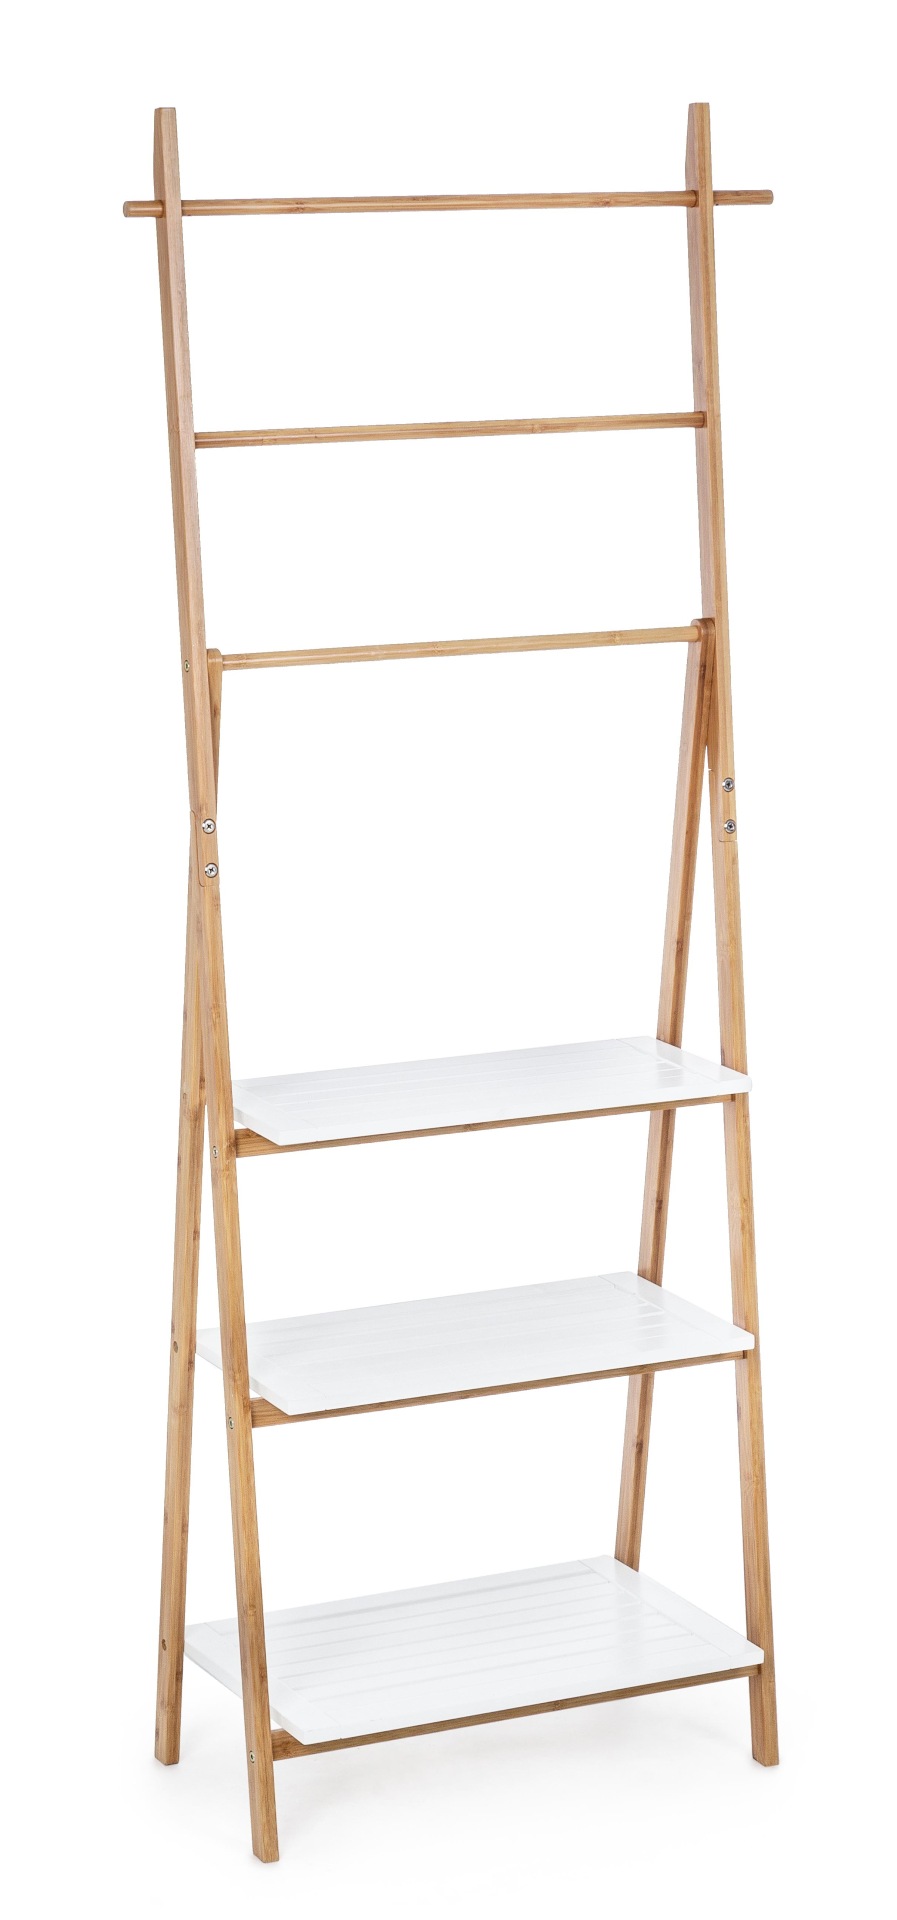 Das Leiterregal Audrey überzeugt mit seinem klassischen Design. Gefertigt wurde es aus Bambusholz, welches einen weißen Farbton besitzt. Das Gestell ist auch aus Bambus und hat eine natürliche Farbe. Das Bücherregal verfügt über drei Böden. Die Breite bet